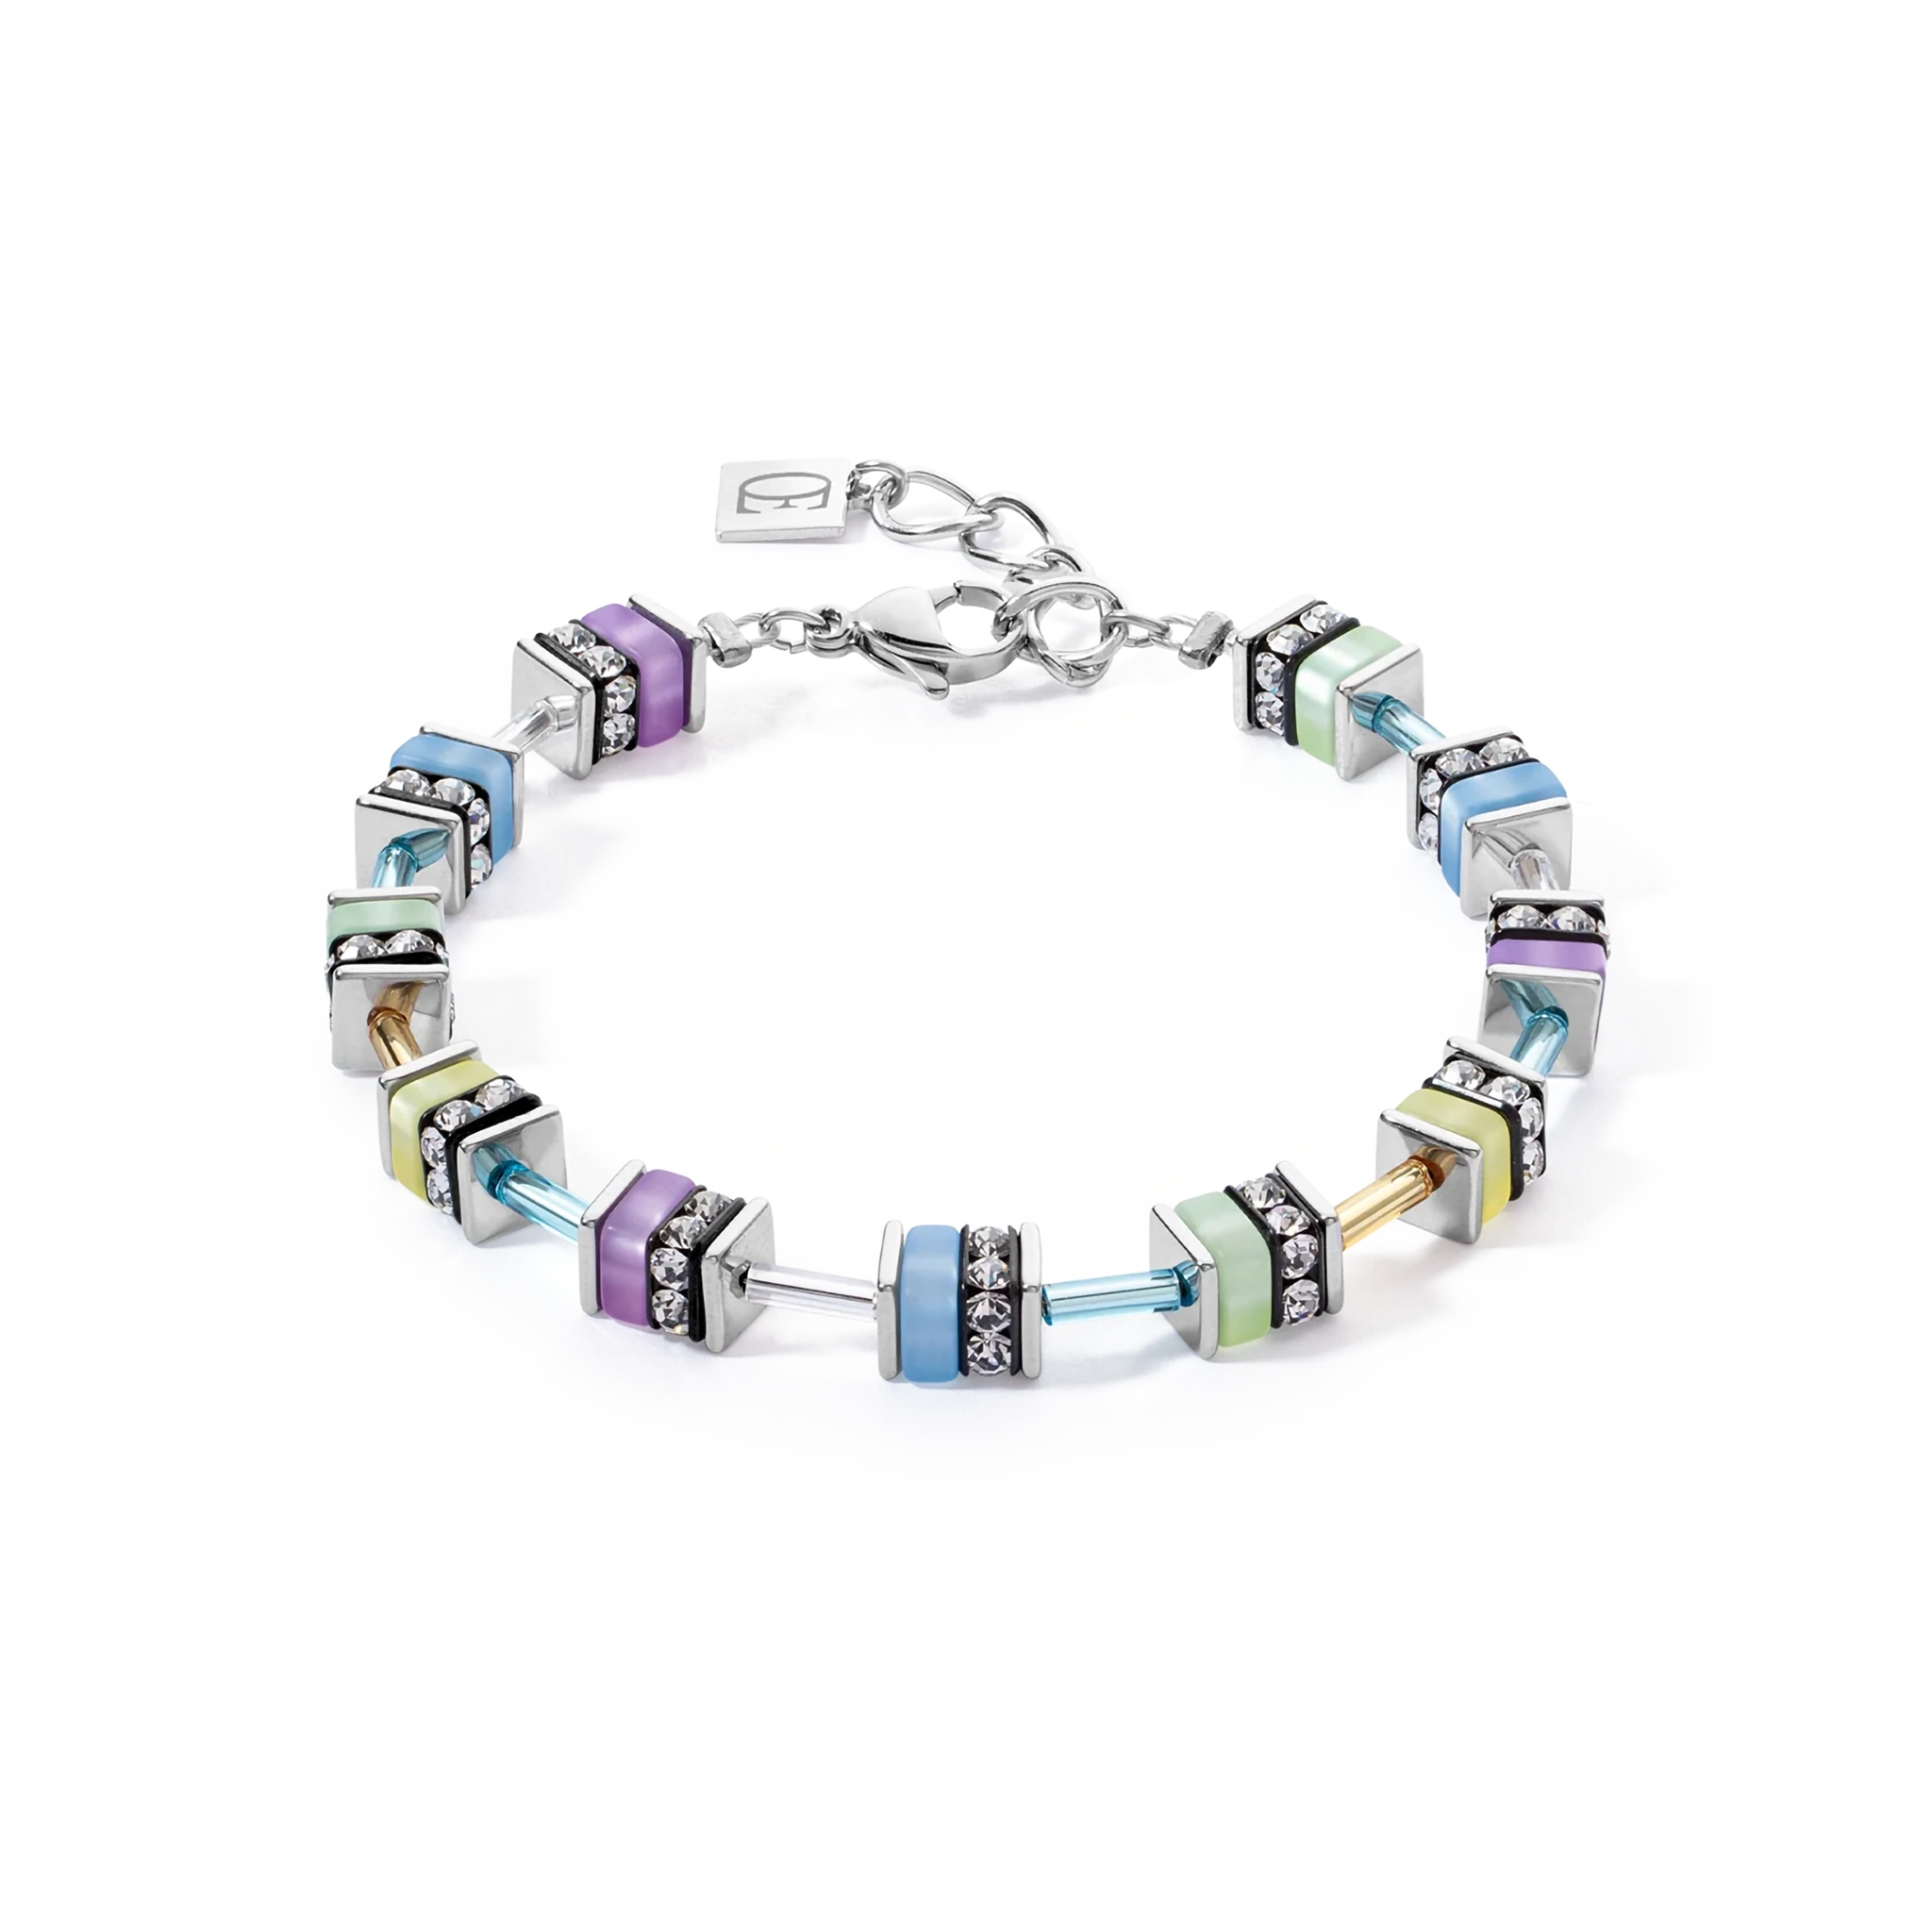 A steel bracelet featuring multicolour pastel stones